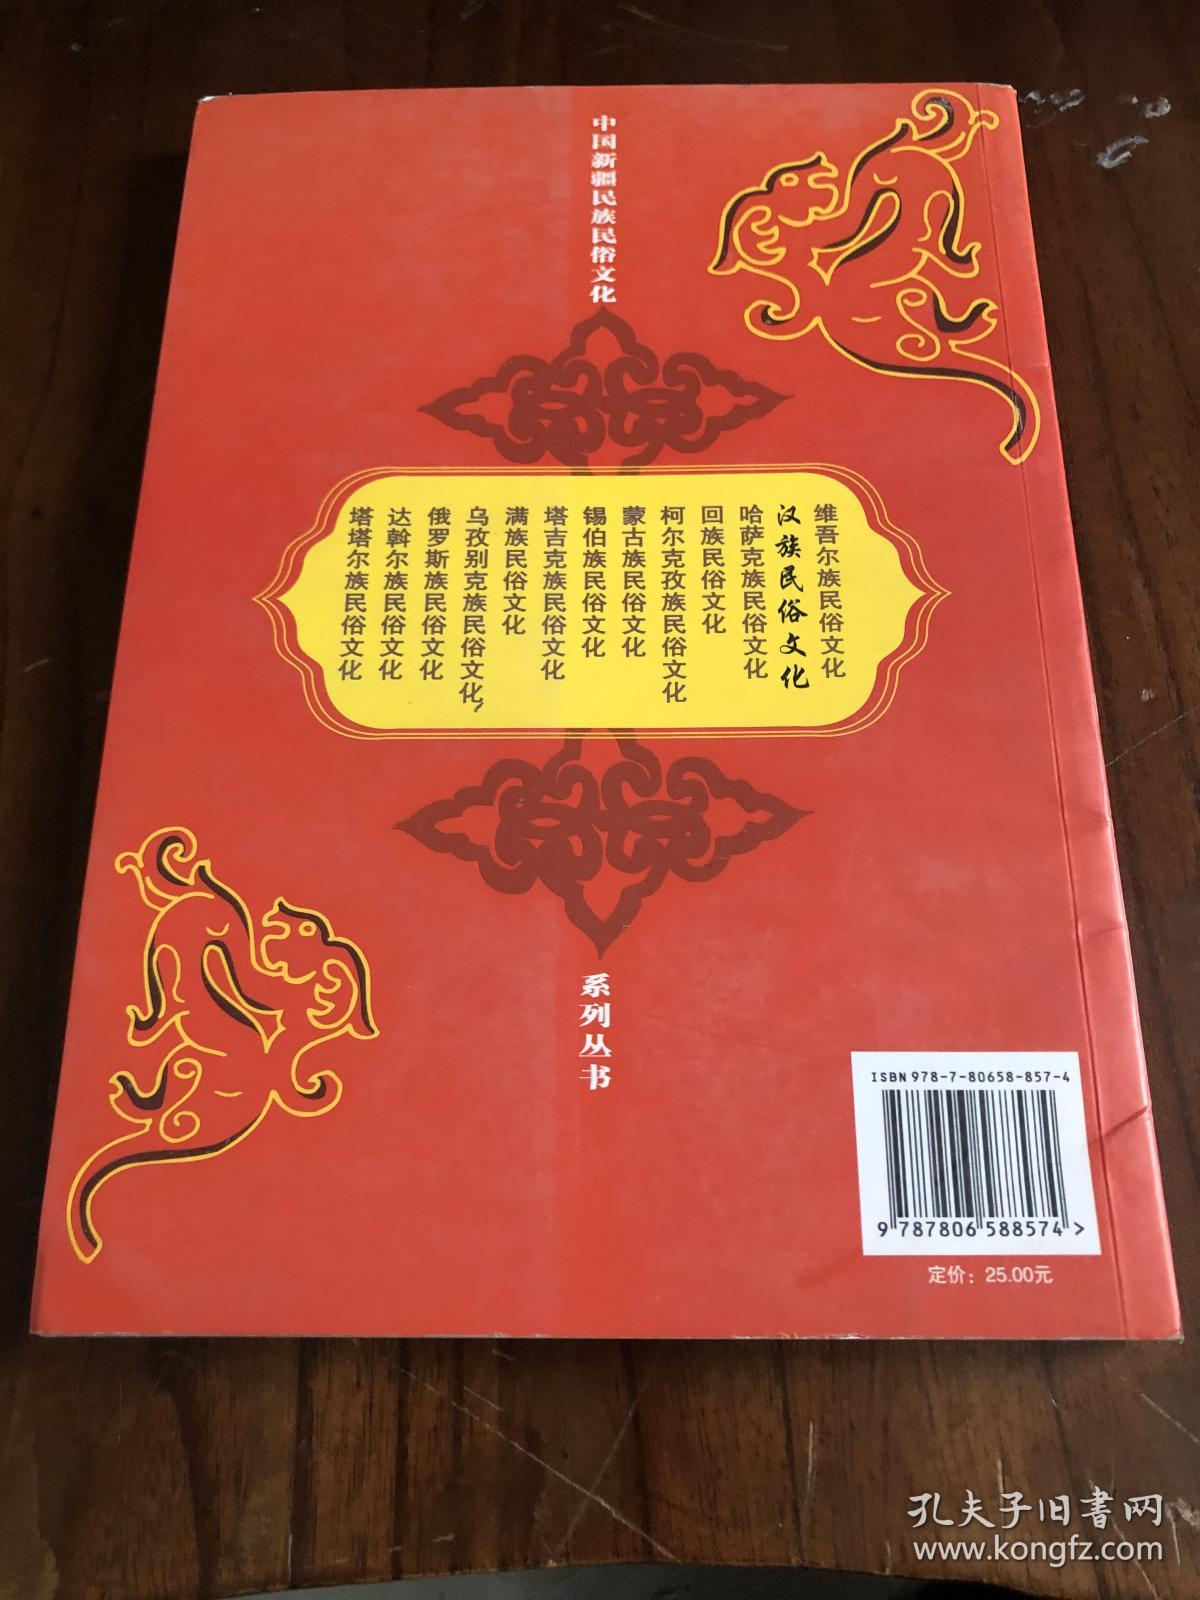 汉族民俗文化(中国新疆民族民俗文化系列丛书)